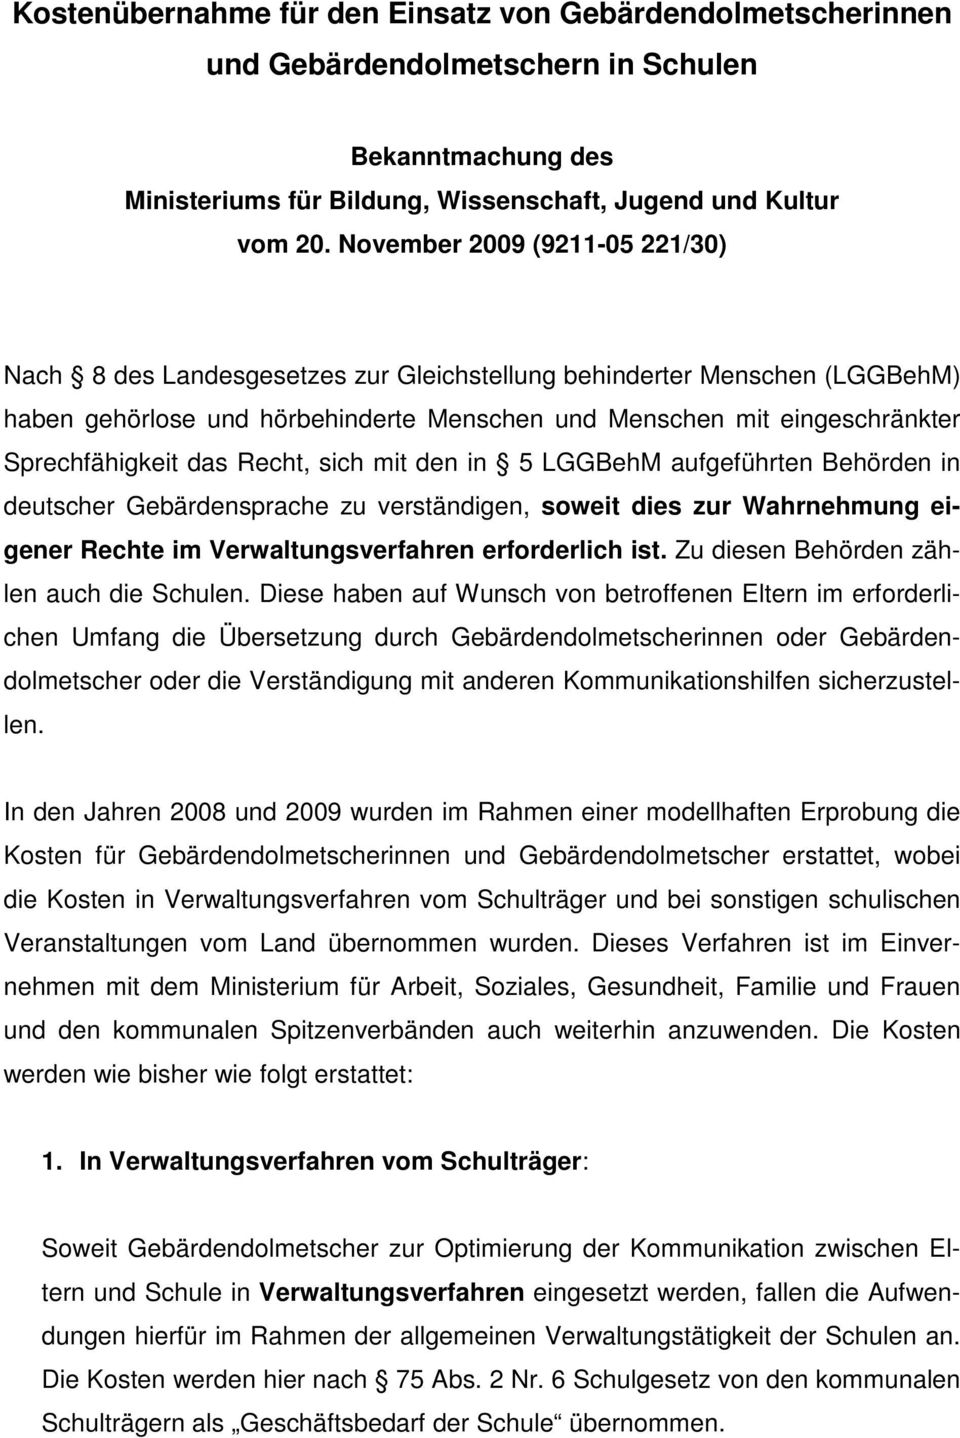 das Recht, sich mit den in 5 LGGBehM aufgeführten Behörden in deutscher Gebärdensprache zu verständigen, soweit dies zur Wahrnehmung eigener Rechte im Verwaltungsverfahren erforderlich ist.